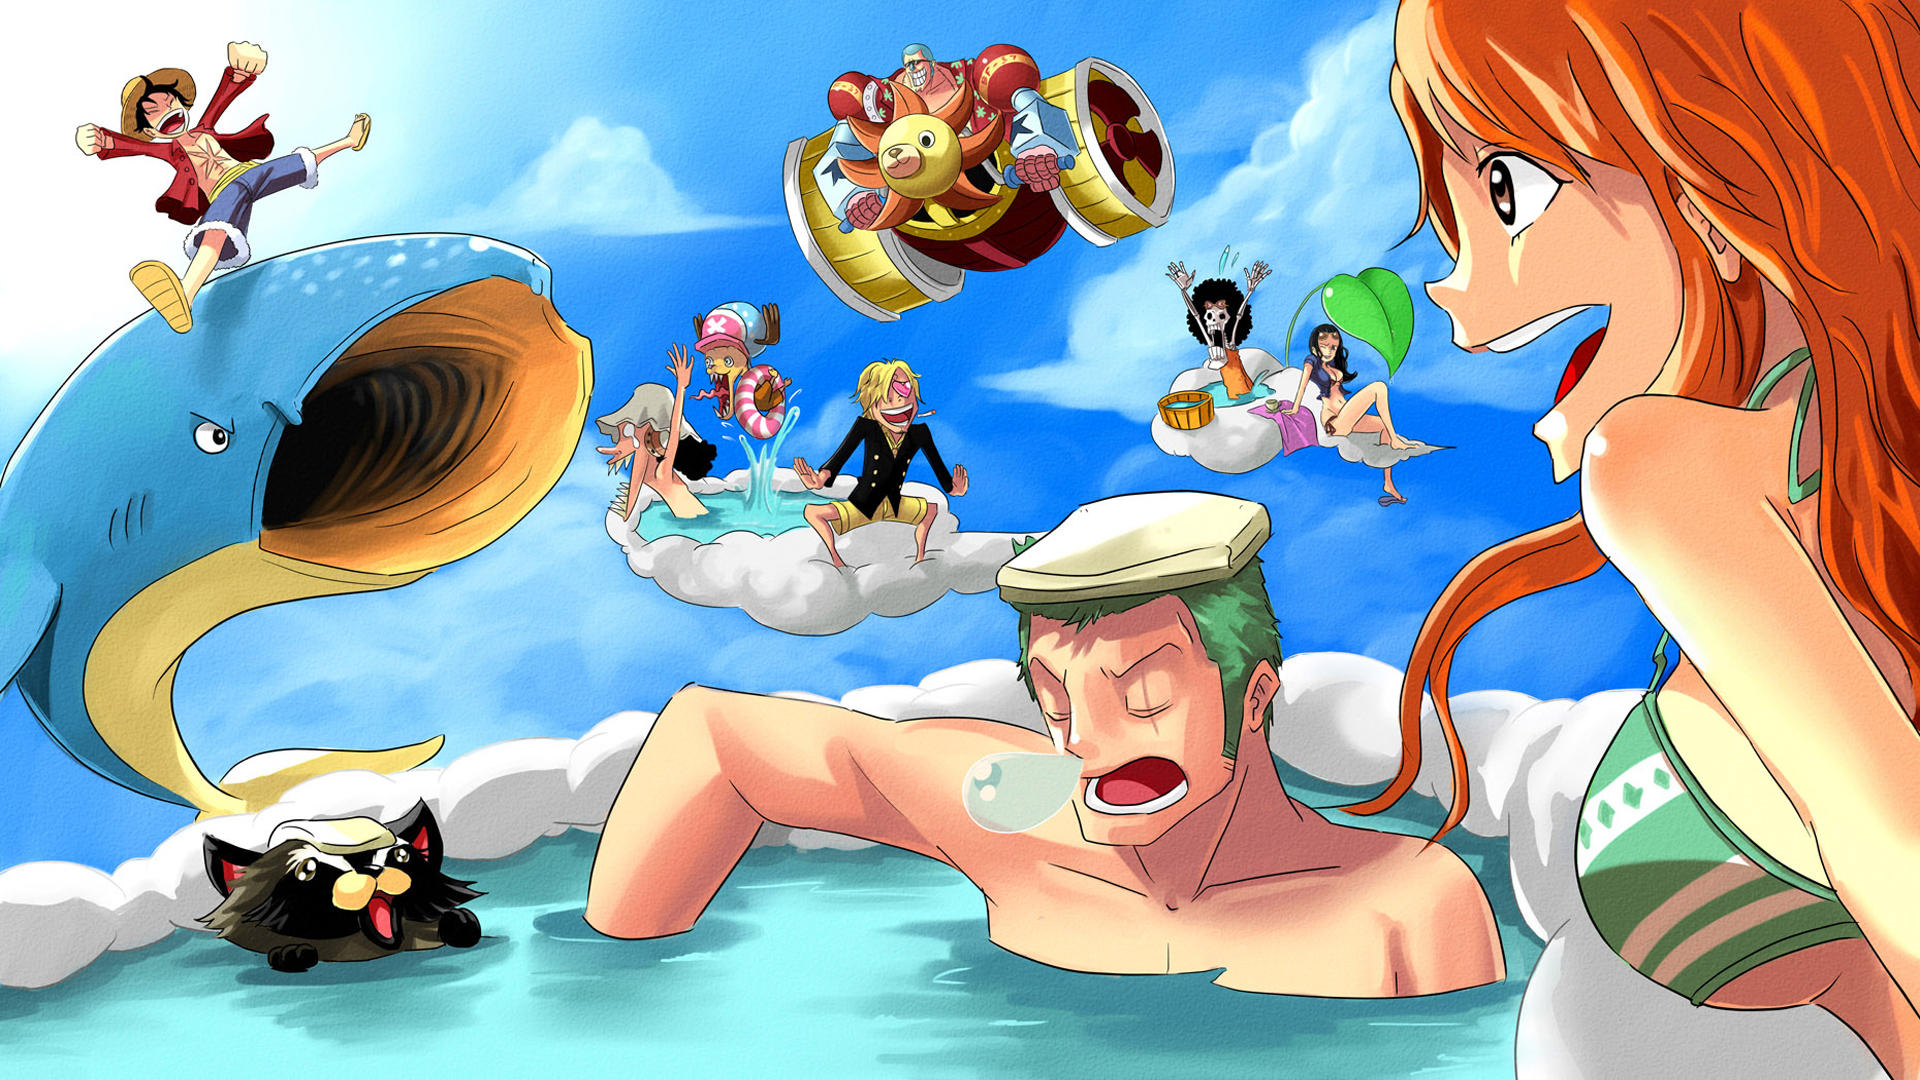 Collectible Card Game là trò chơi thú vị dựa trên One Piece. Với những lá bài đầy màu sắc và các nhân vật quen thuộc, Monkey D. Luffy CCG sẽ đem lại cho bạn những trận đấu vô cùng hấp dẫn. Hãy quan tâm đến chi tiết trò chơi tại đây.